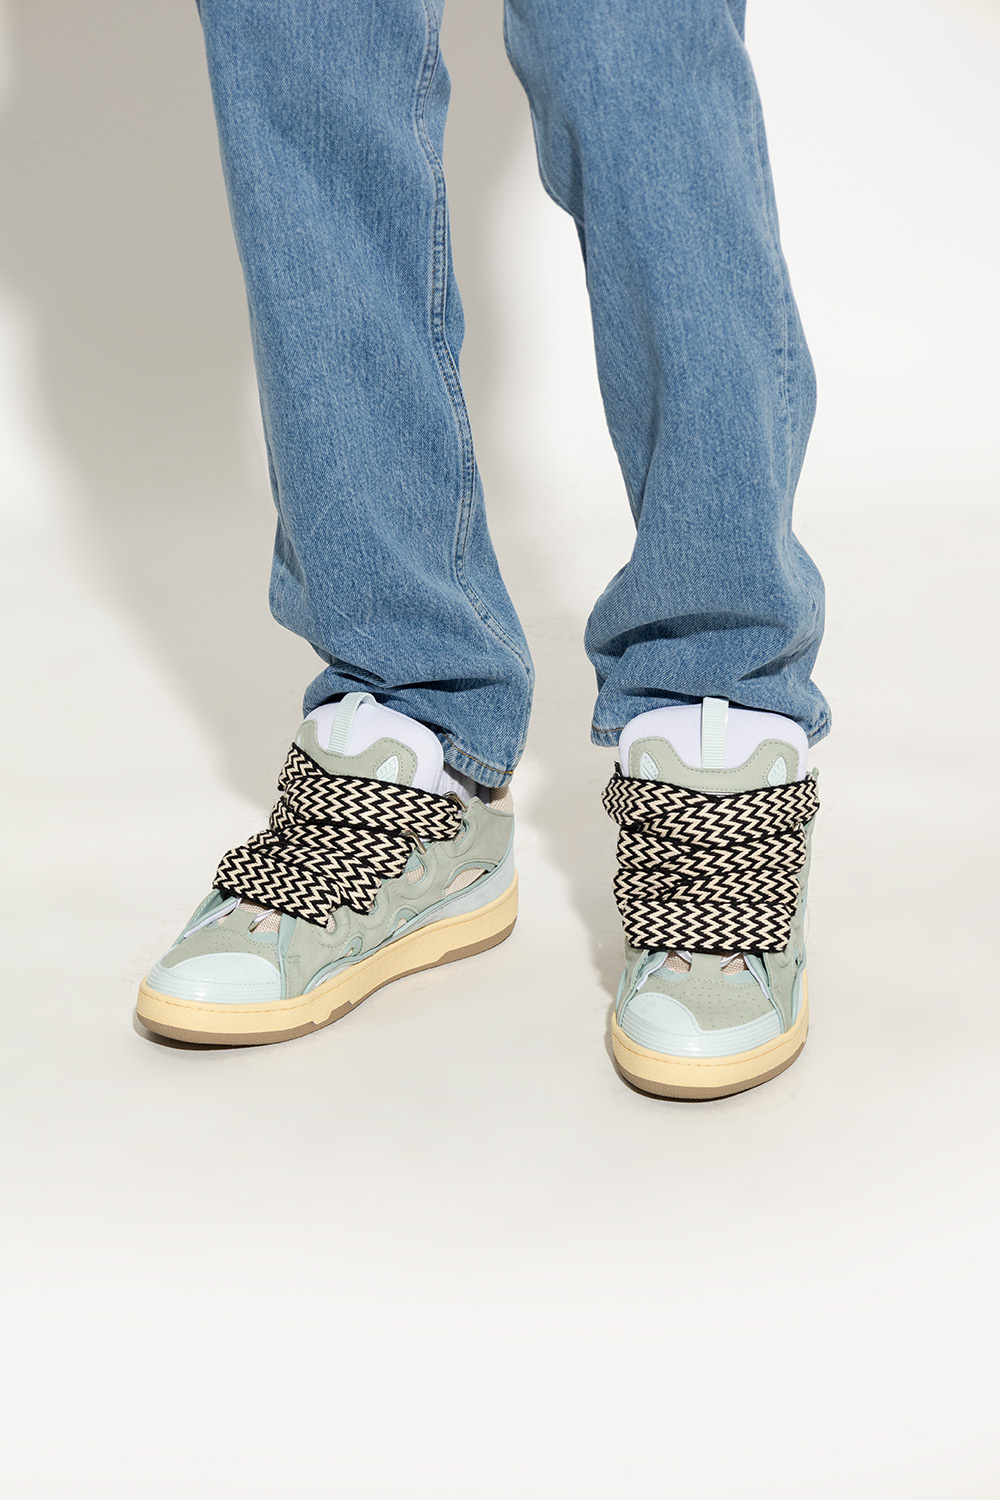 Lanvin ‘Curb’ sneakers | Men's Shoes | Vitkac